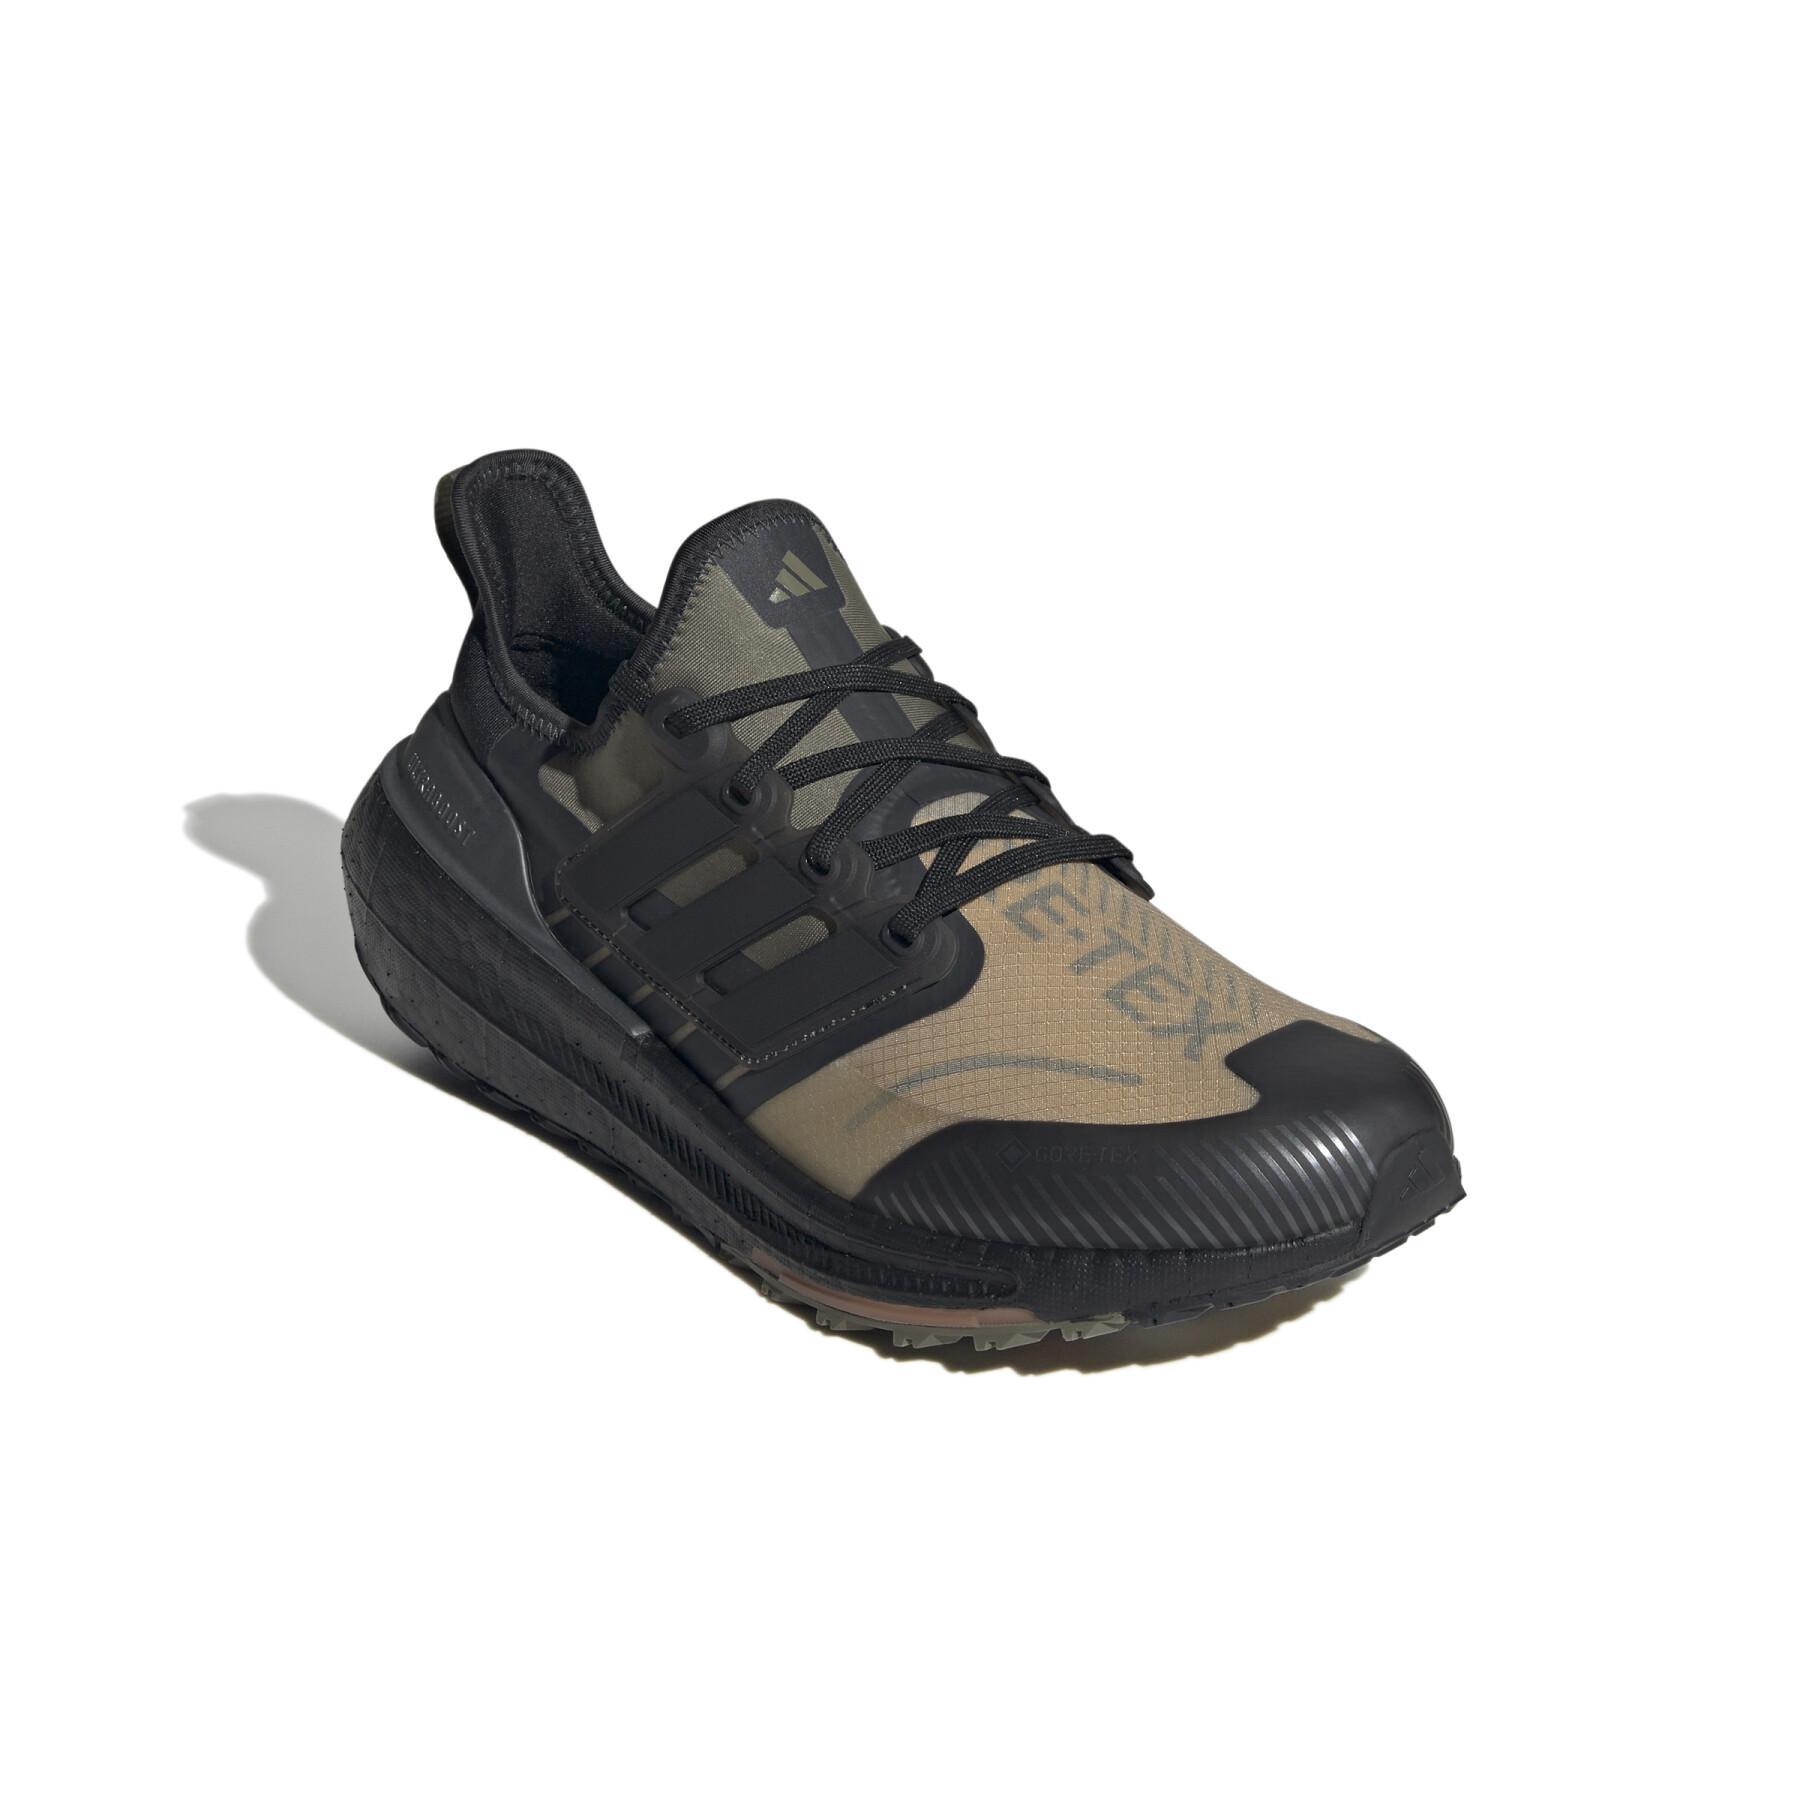 Running shoes adidas Ultraboost Light GTX